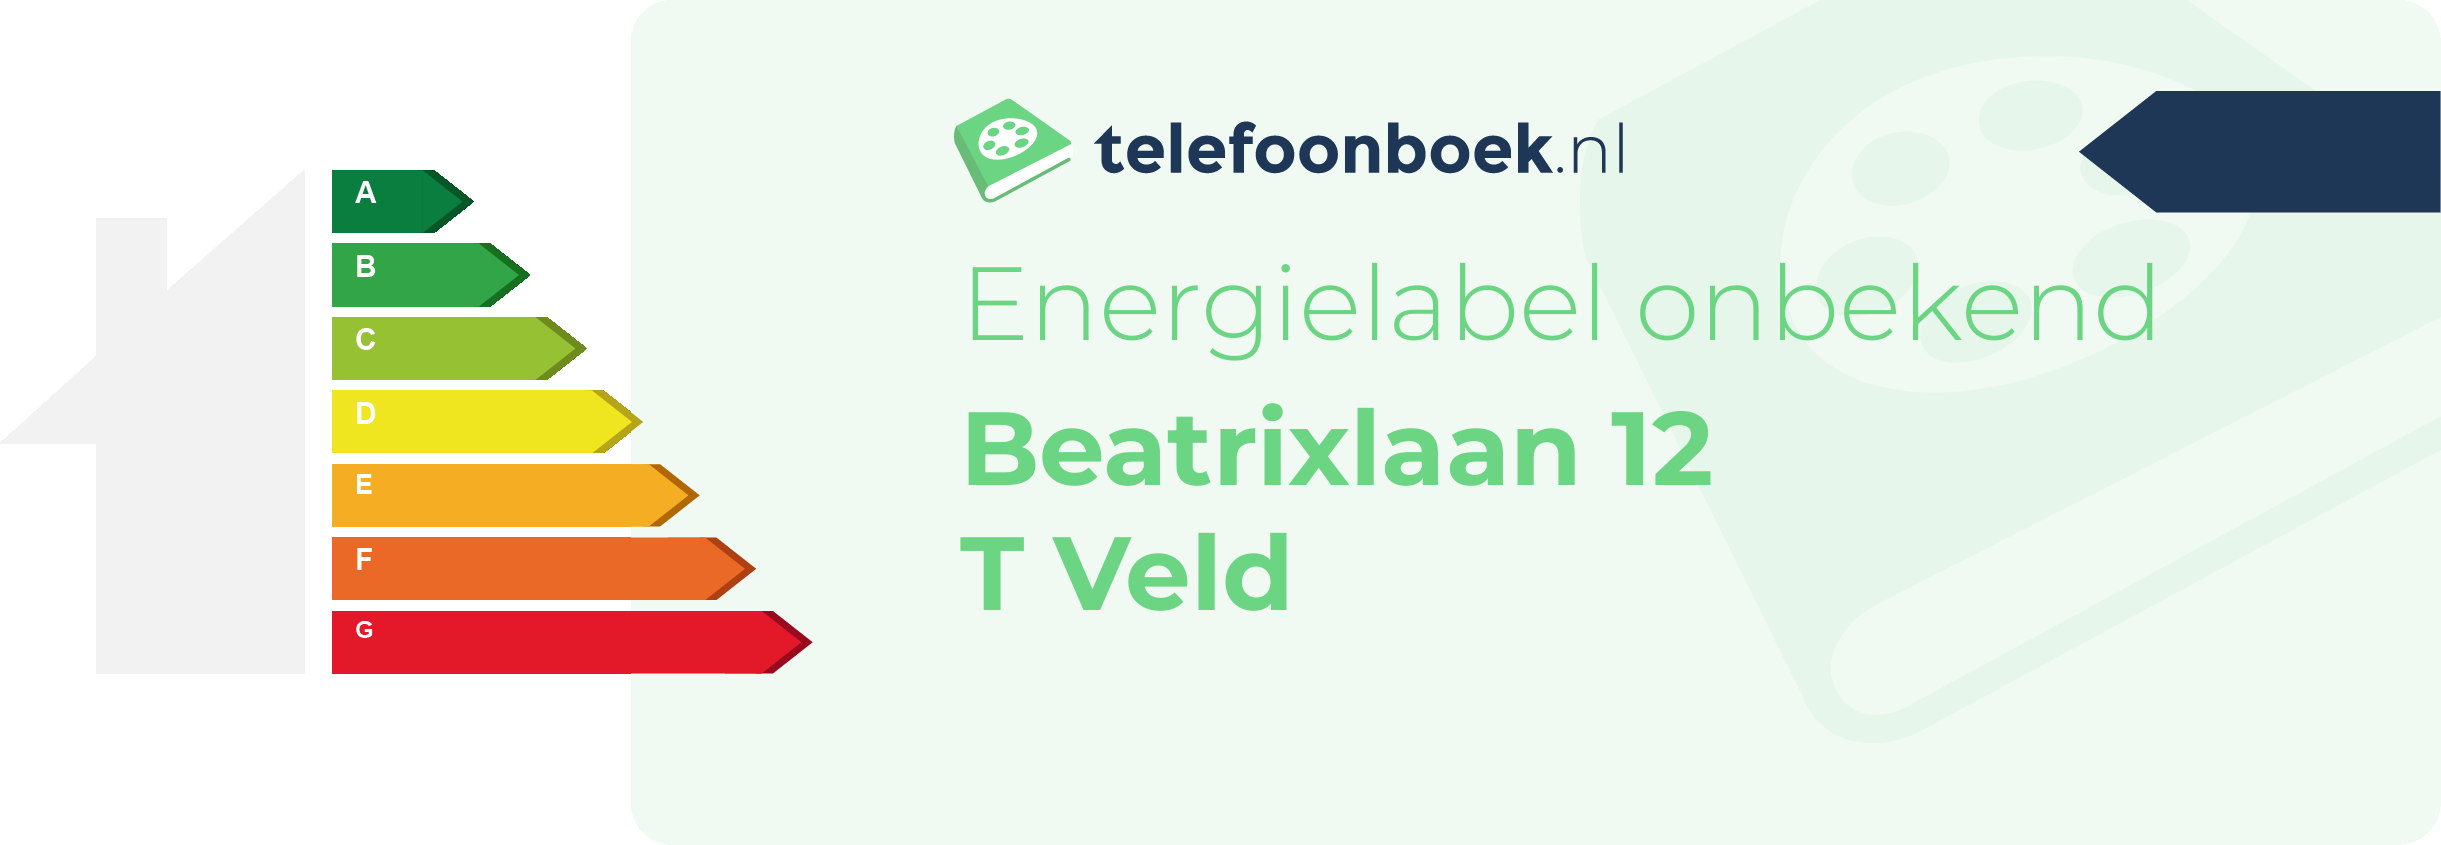 Energielabel Beatrixlaan 12 T Veld